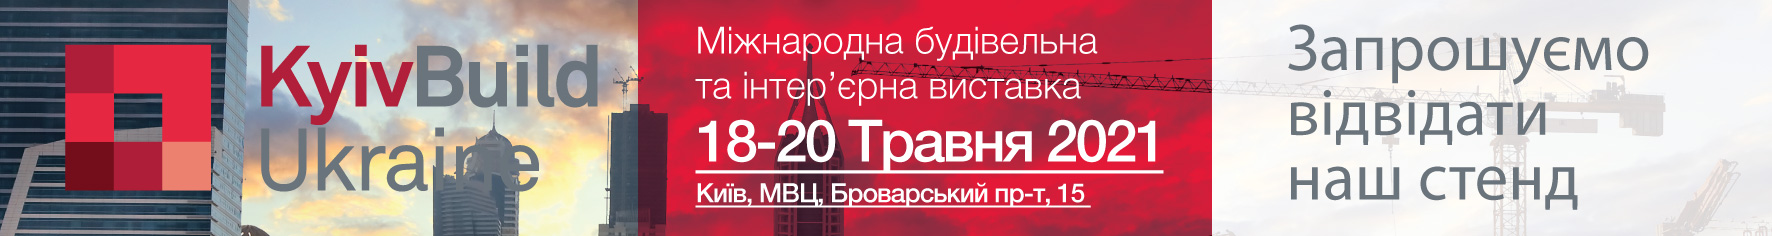 Запрошуємо на виставку KyivBuild Ukraine 2021